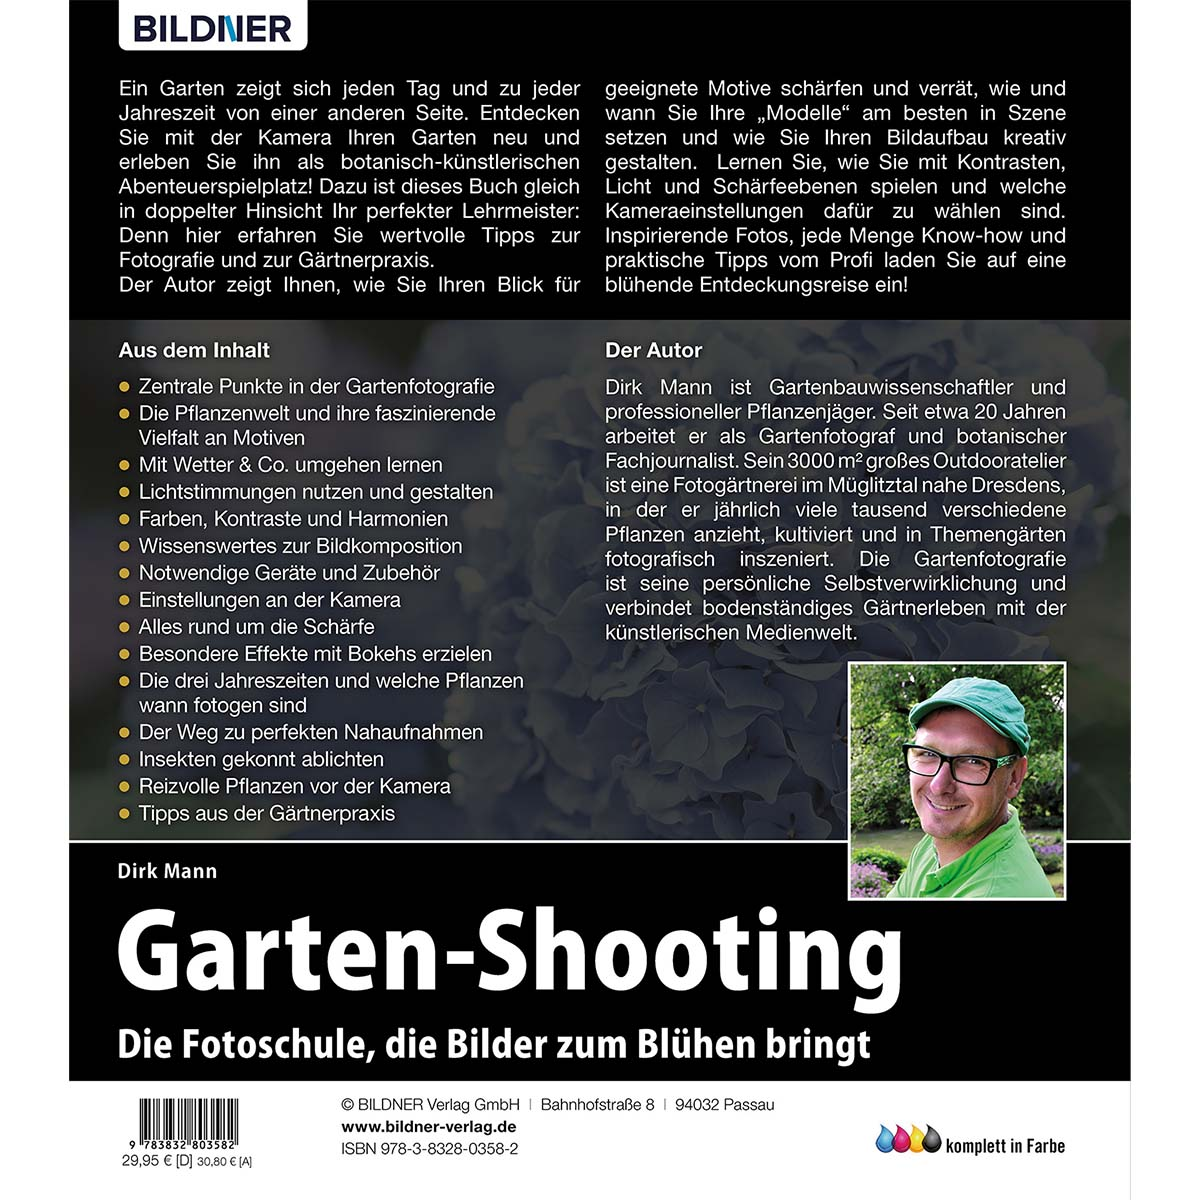 die Fotoschule, Garten-Shooting Blühen zum bringt Bilder - Die